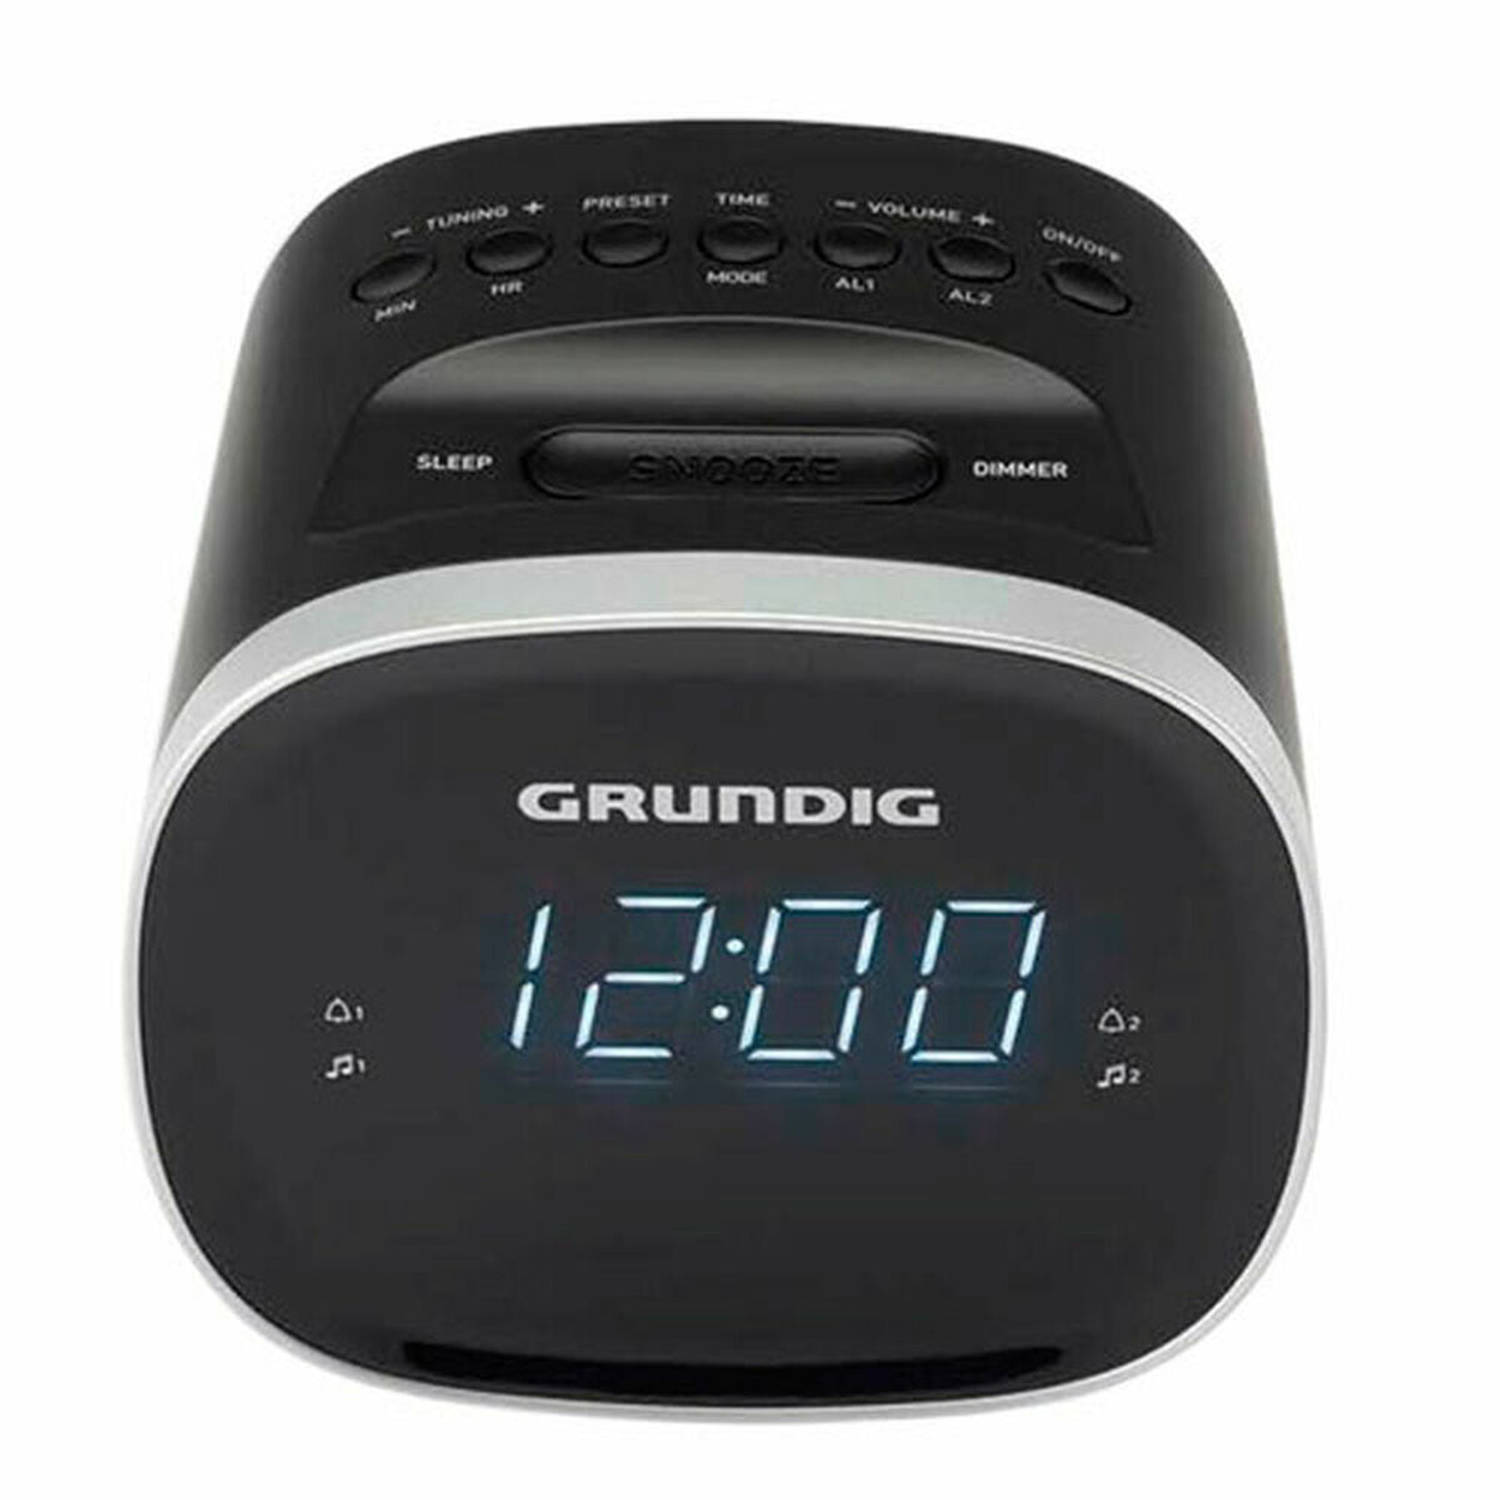 Radio alarmklok Grundig SCN230 LED AM/FM 1,5 W